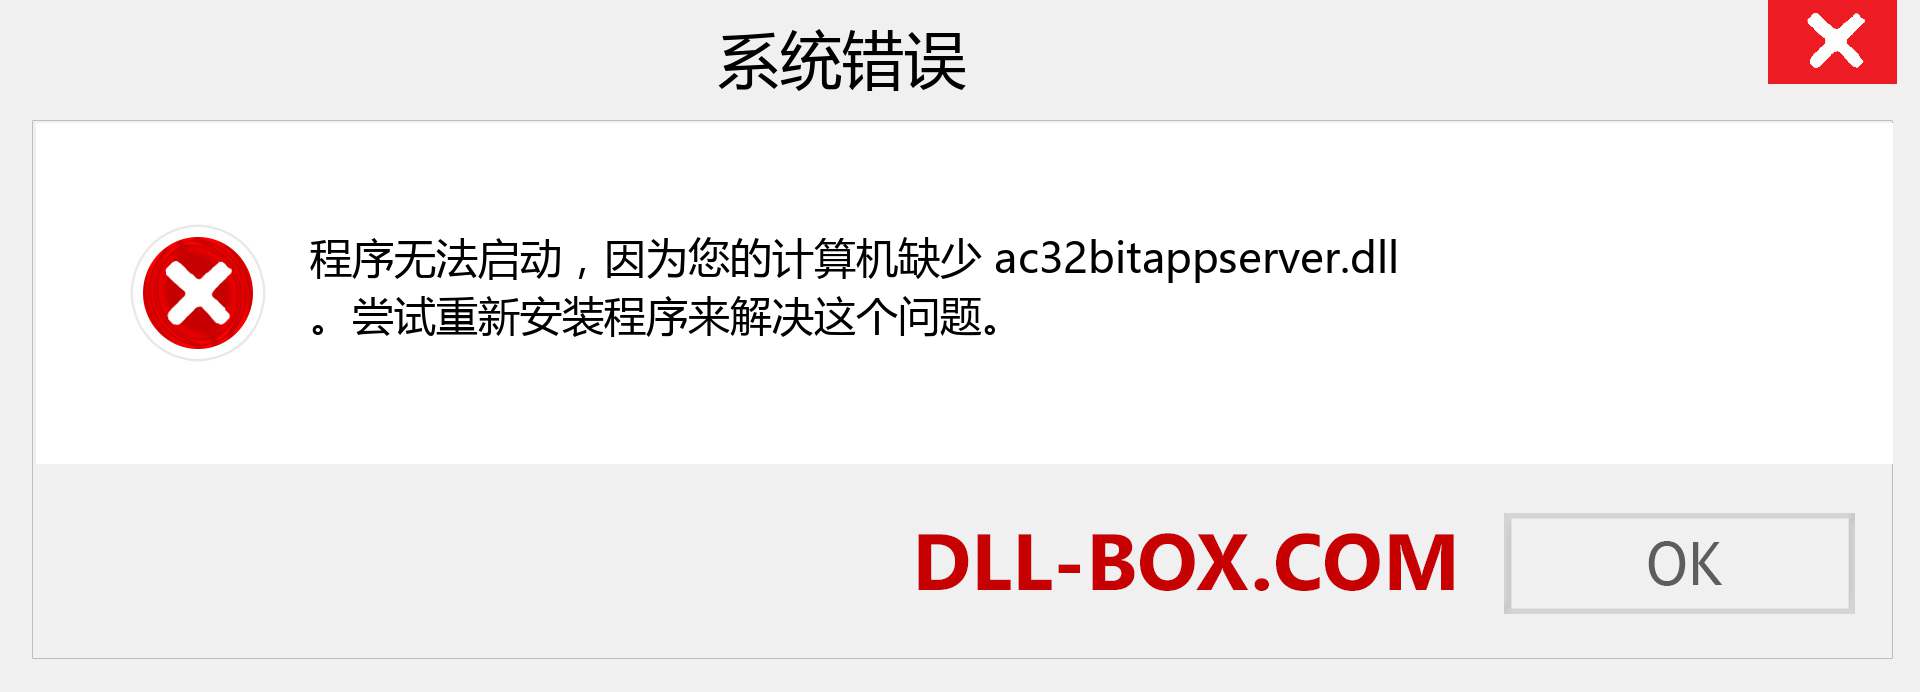 ac32bitappserver.dll 文件丢失？。 适用于 Windows 7、8、10 的下载 - 修复 Windows、照片、图像上的 ac32bitappserver dll 丢失错误